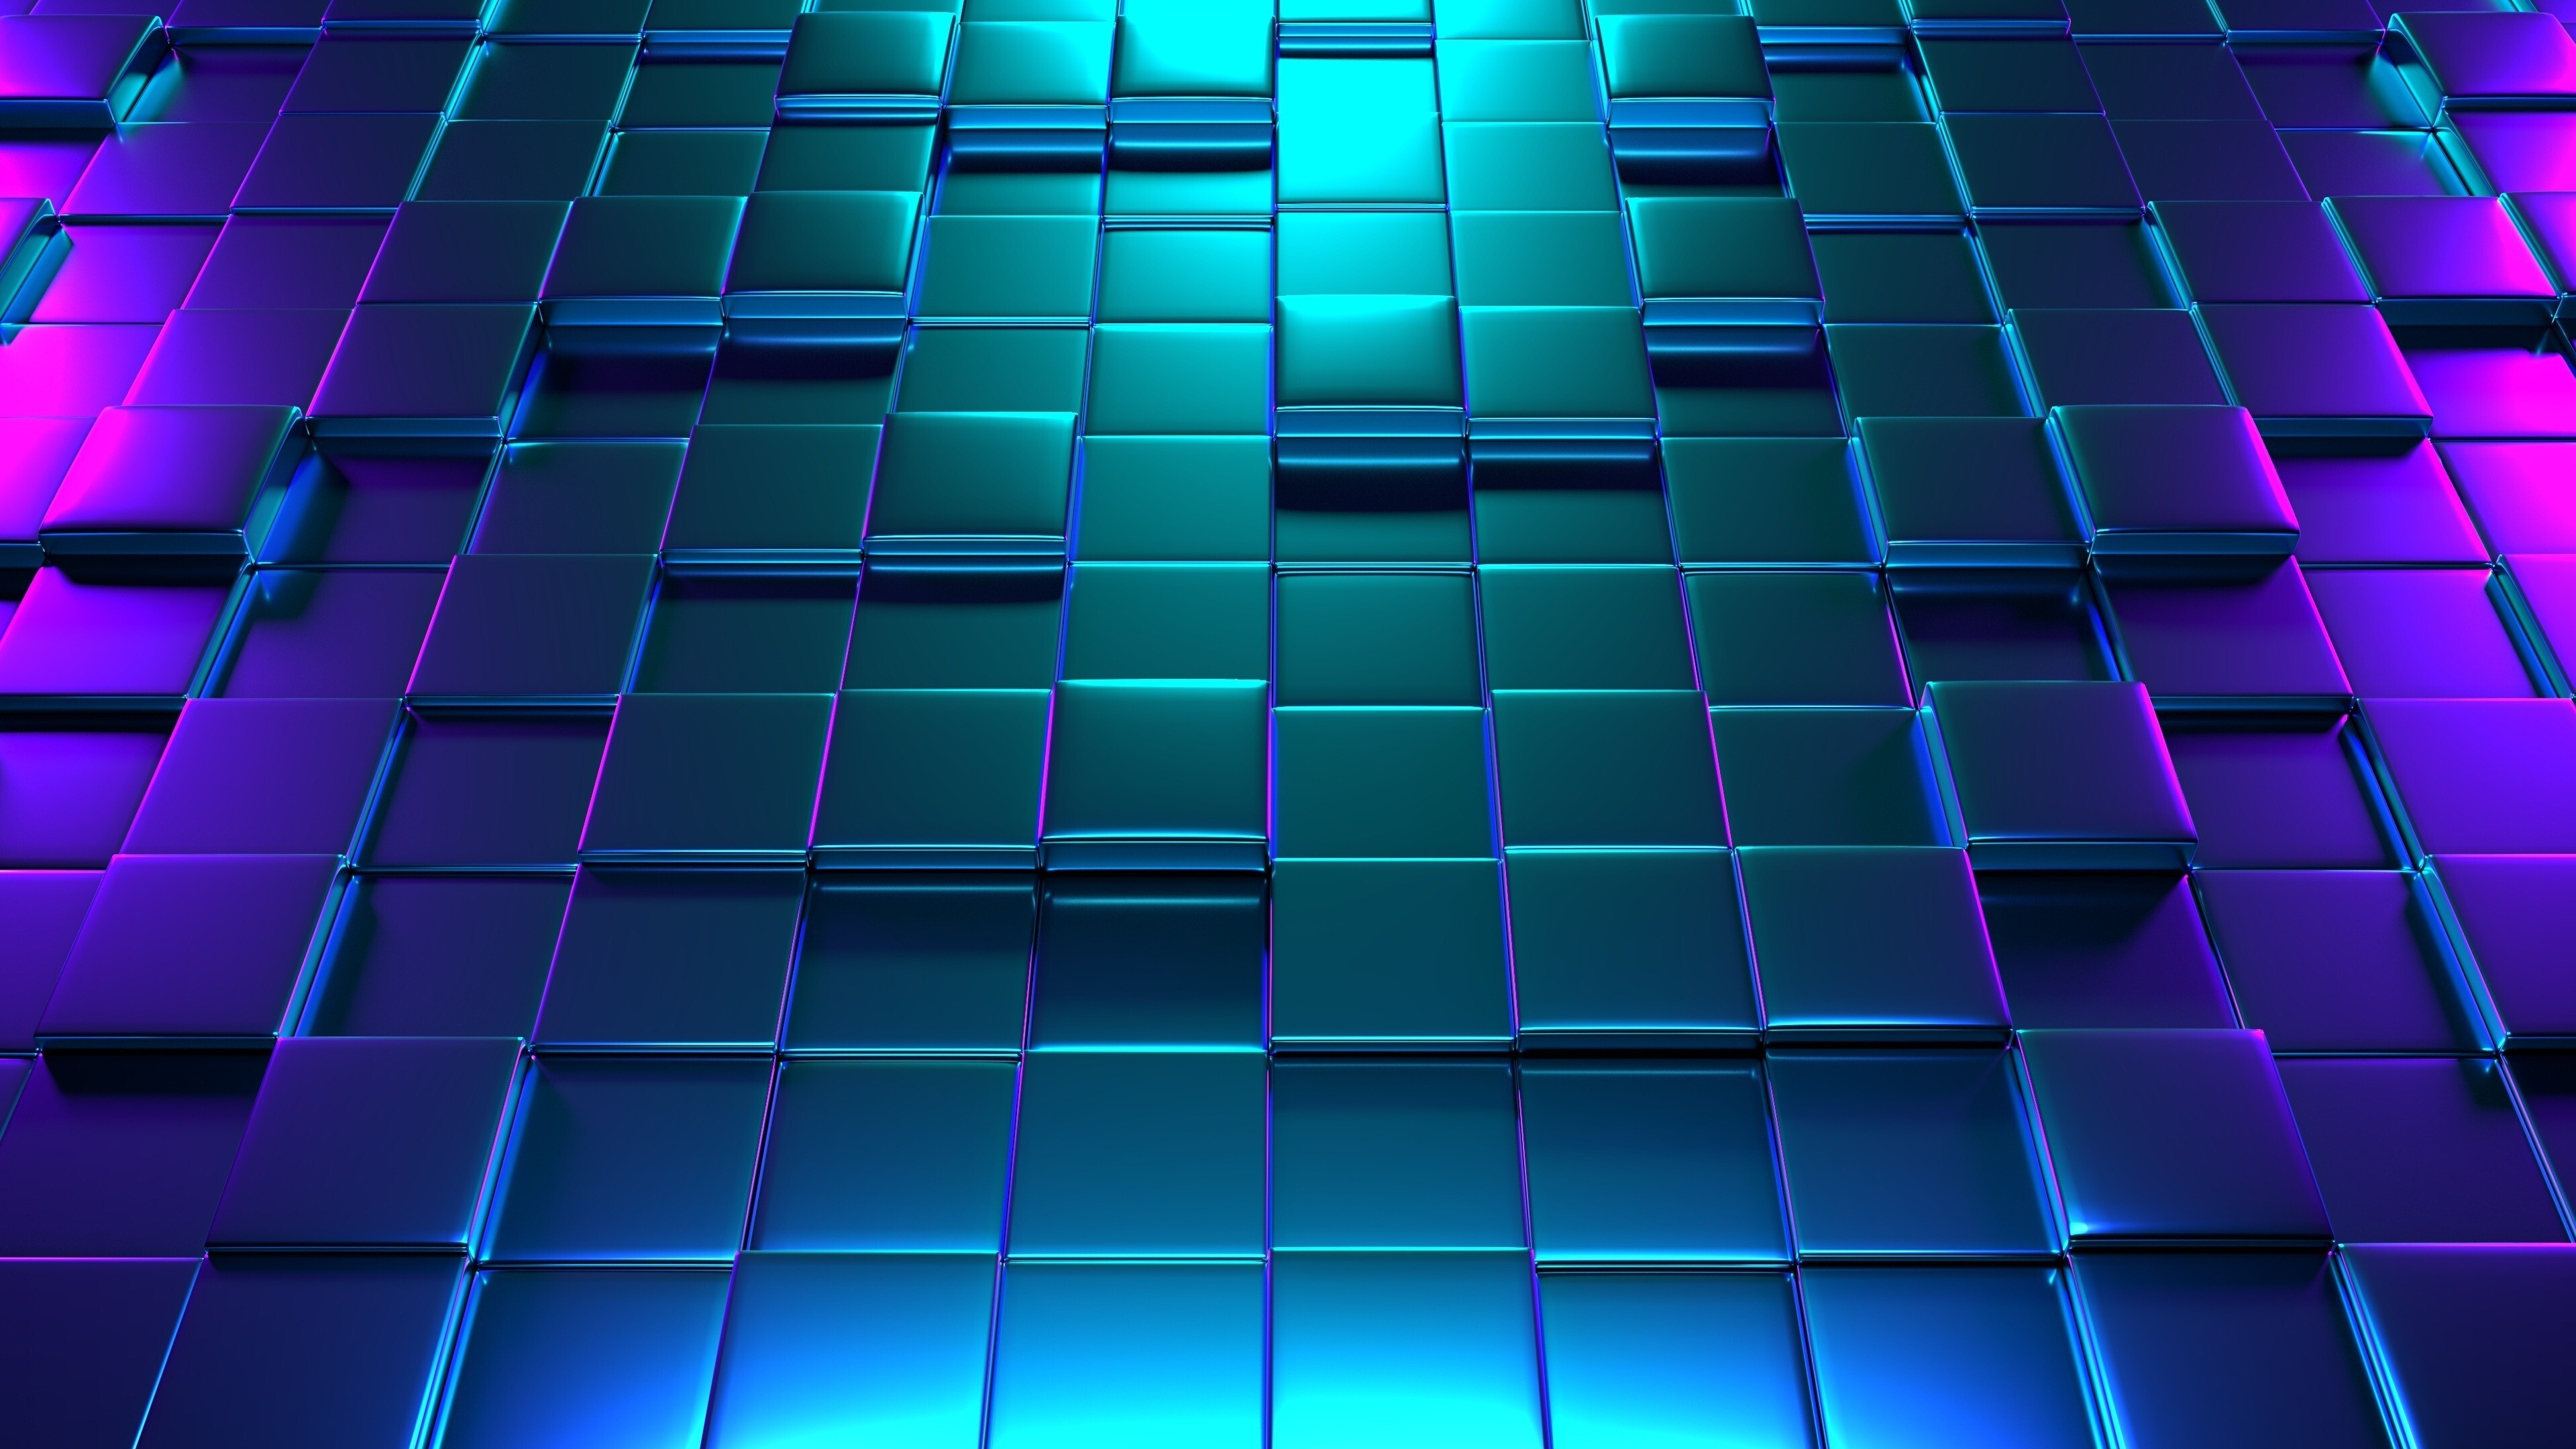 عکس استوک سه بعدی مکعب های فلزی آبی بنفش با کیفیت عالی